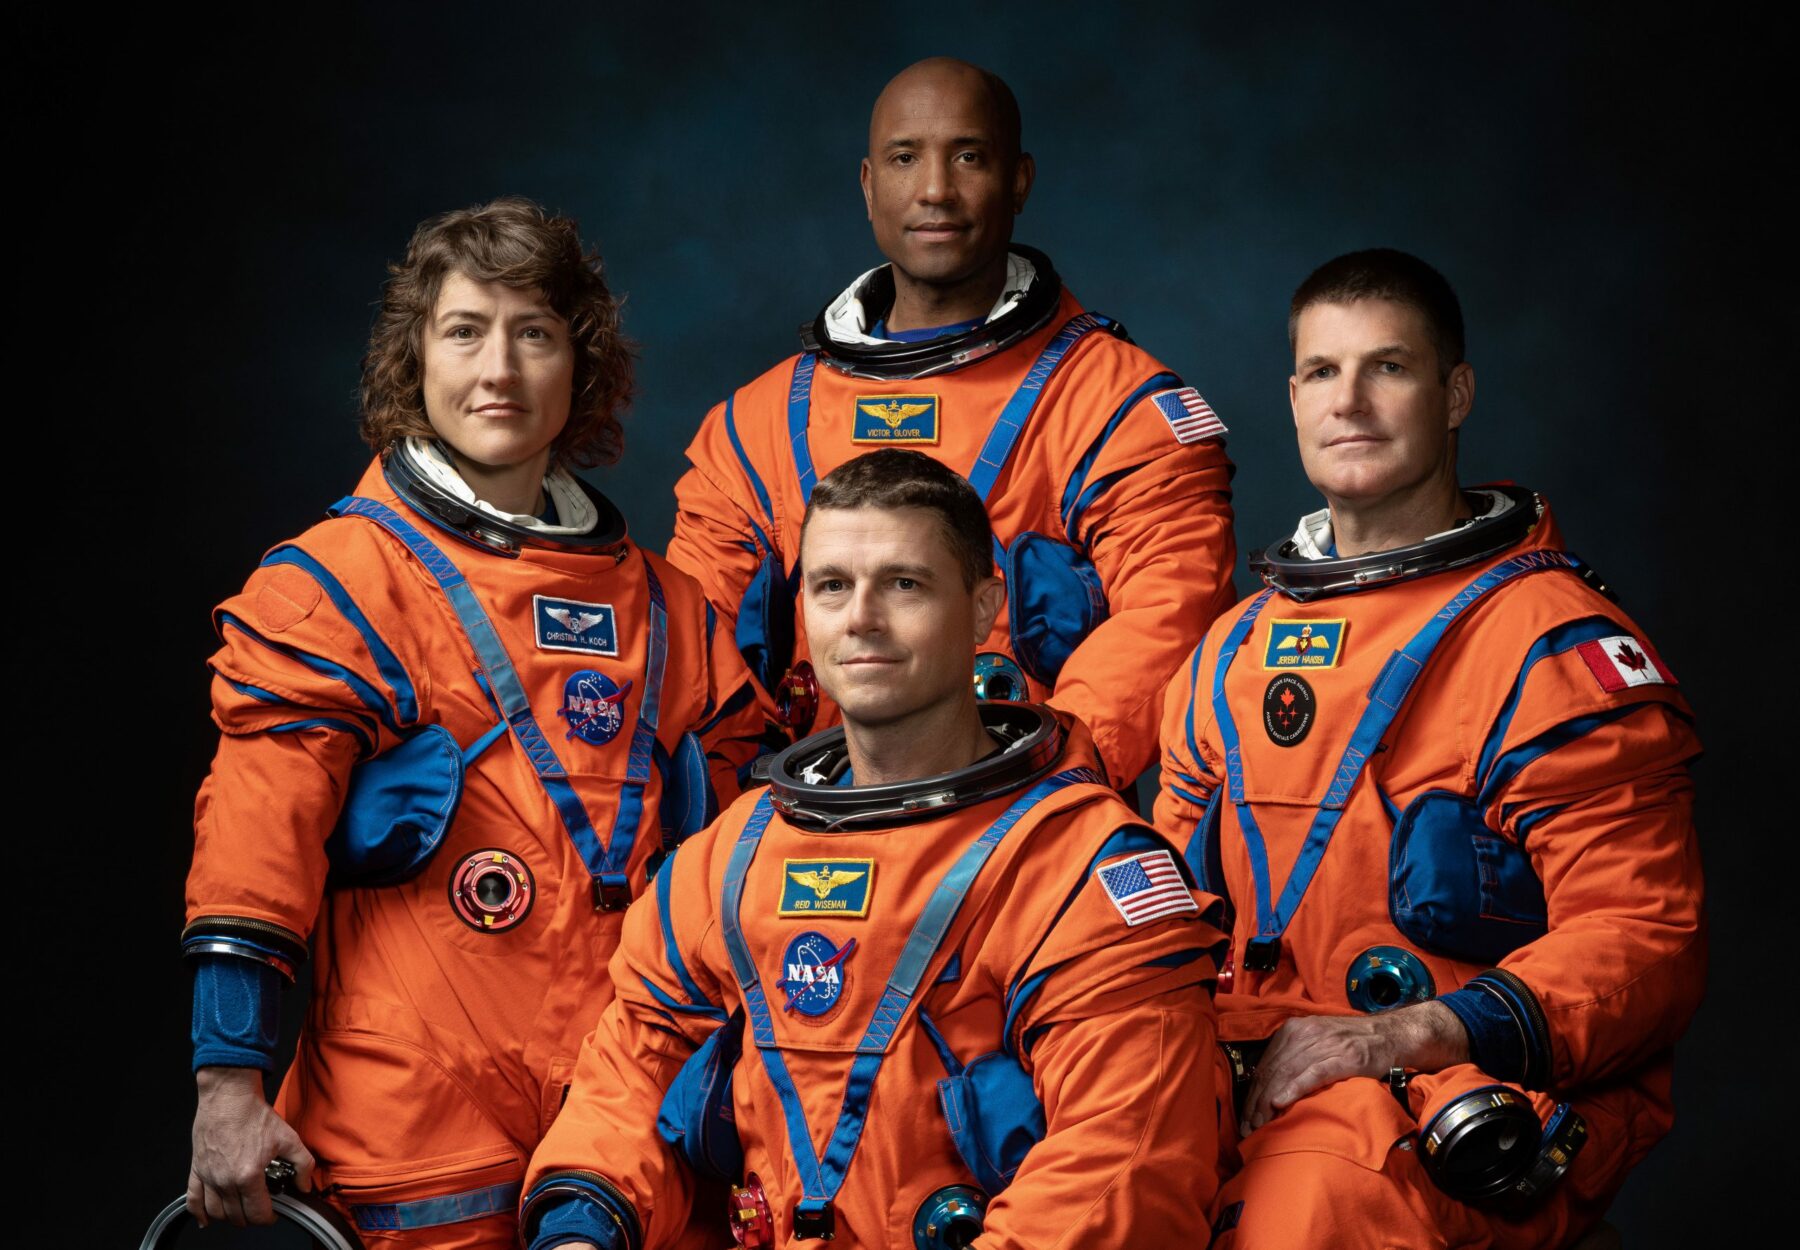 Fire astronautar, inkludert ei kvinne og ein svart mannen kvinn